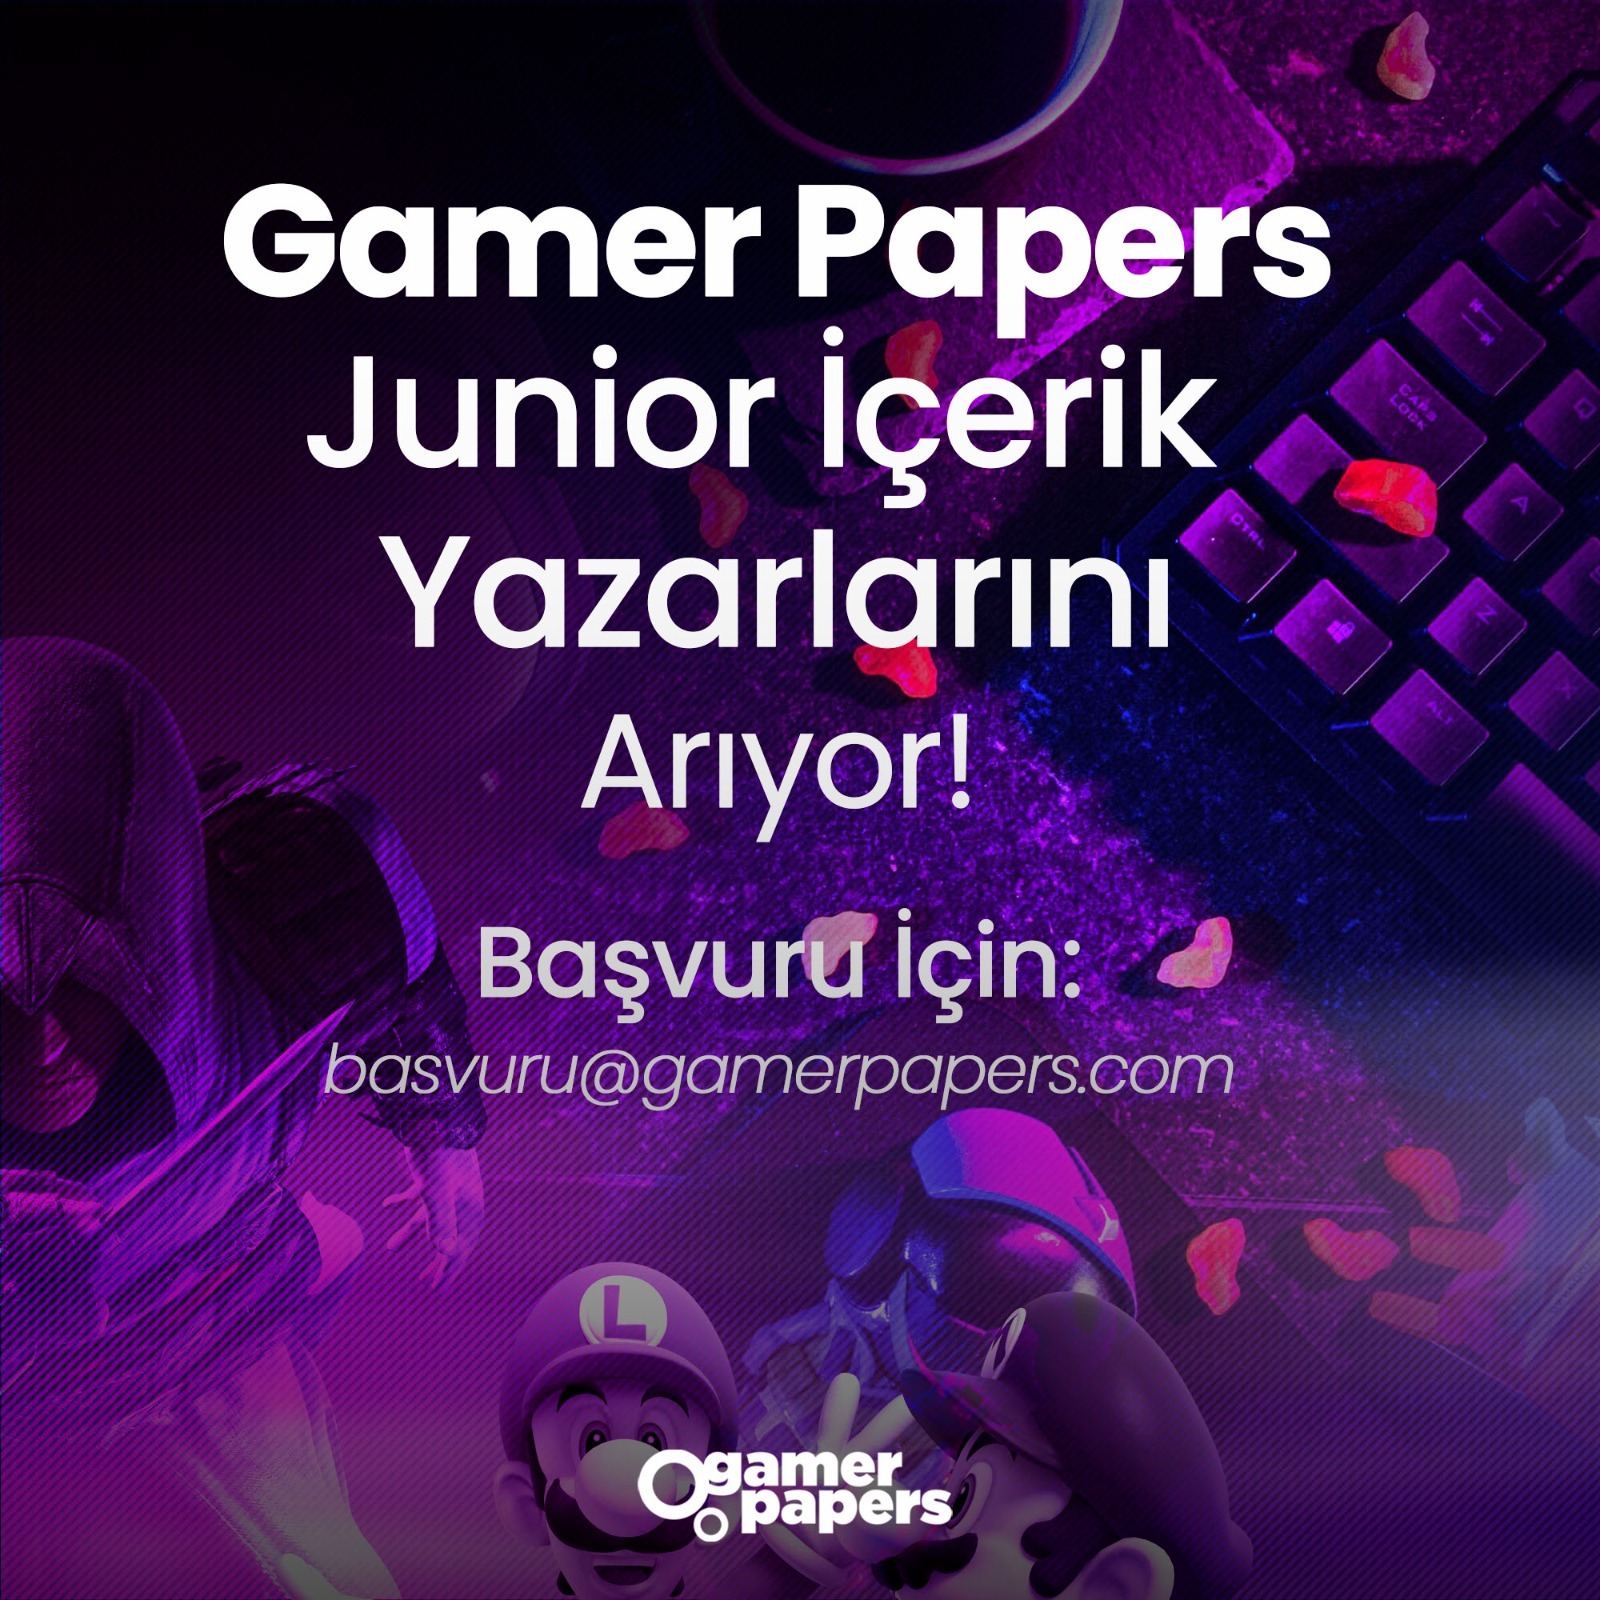 Gamerpapers Junior İçerik Yazarını arıyor!